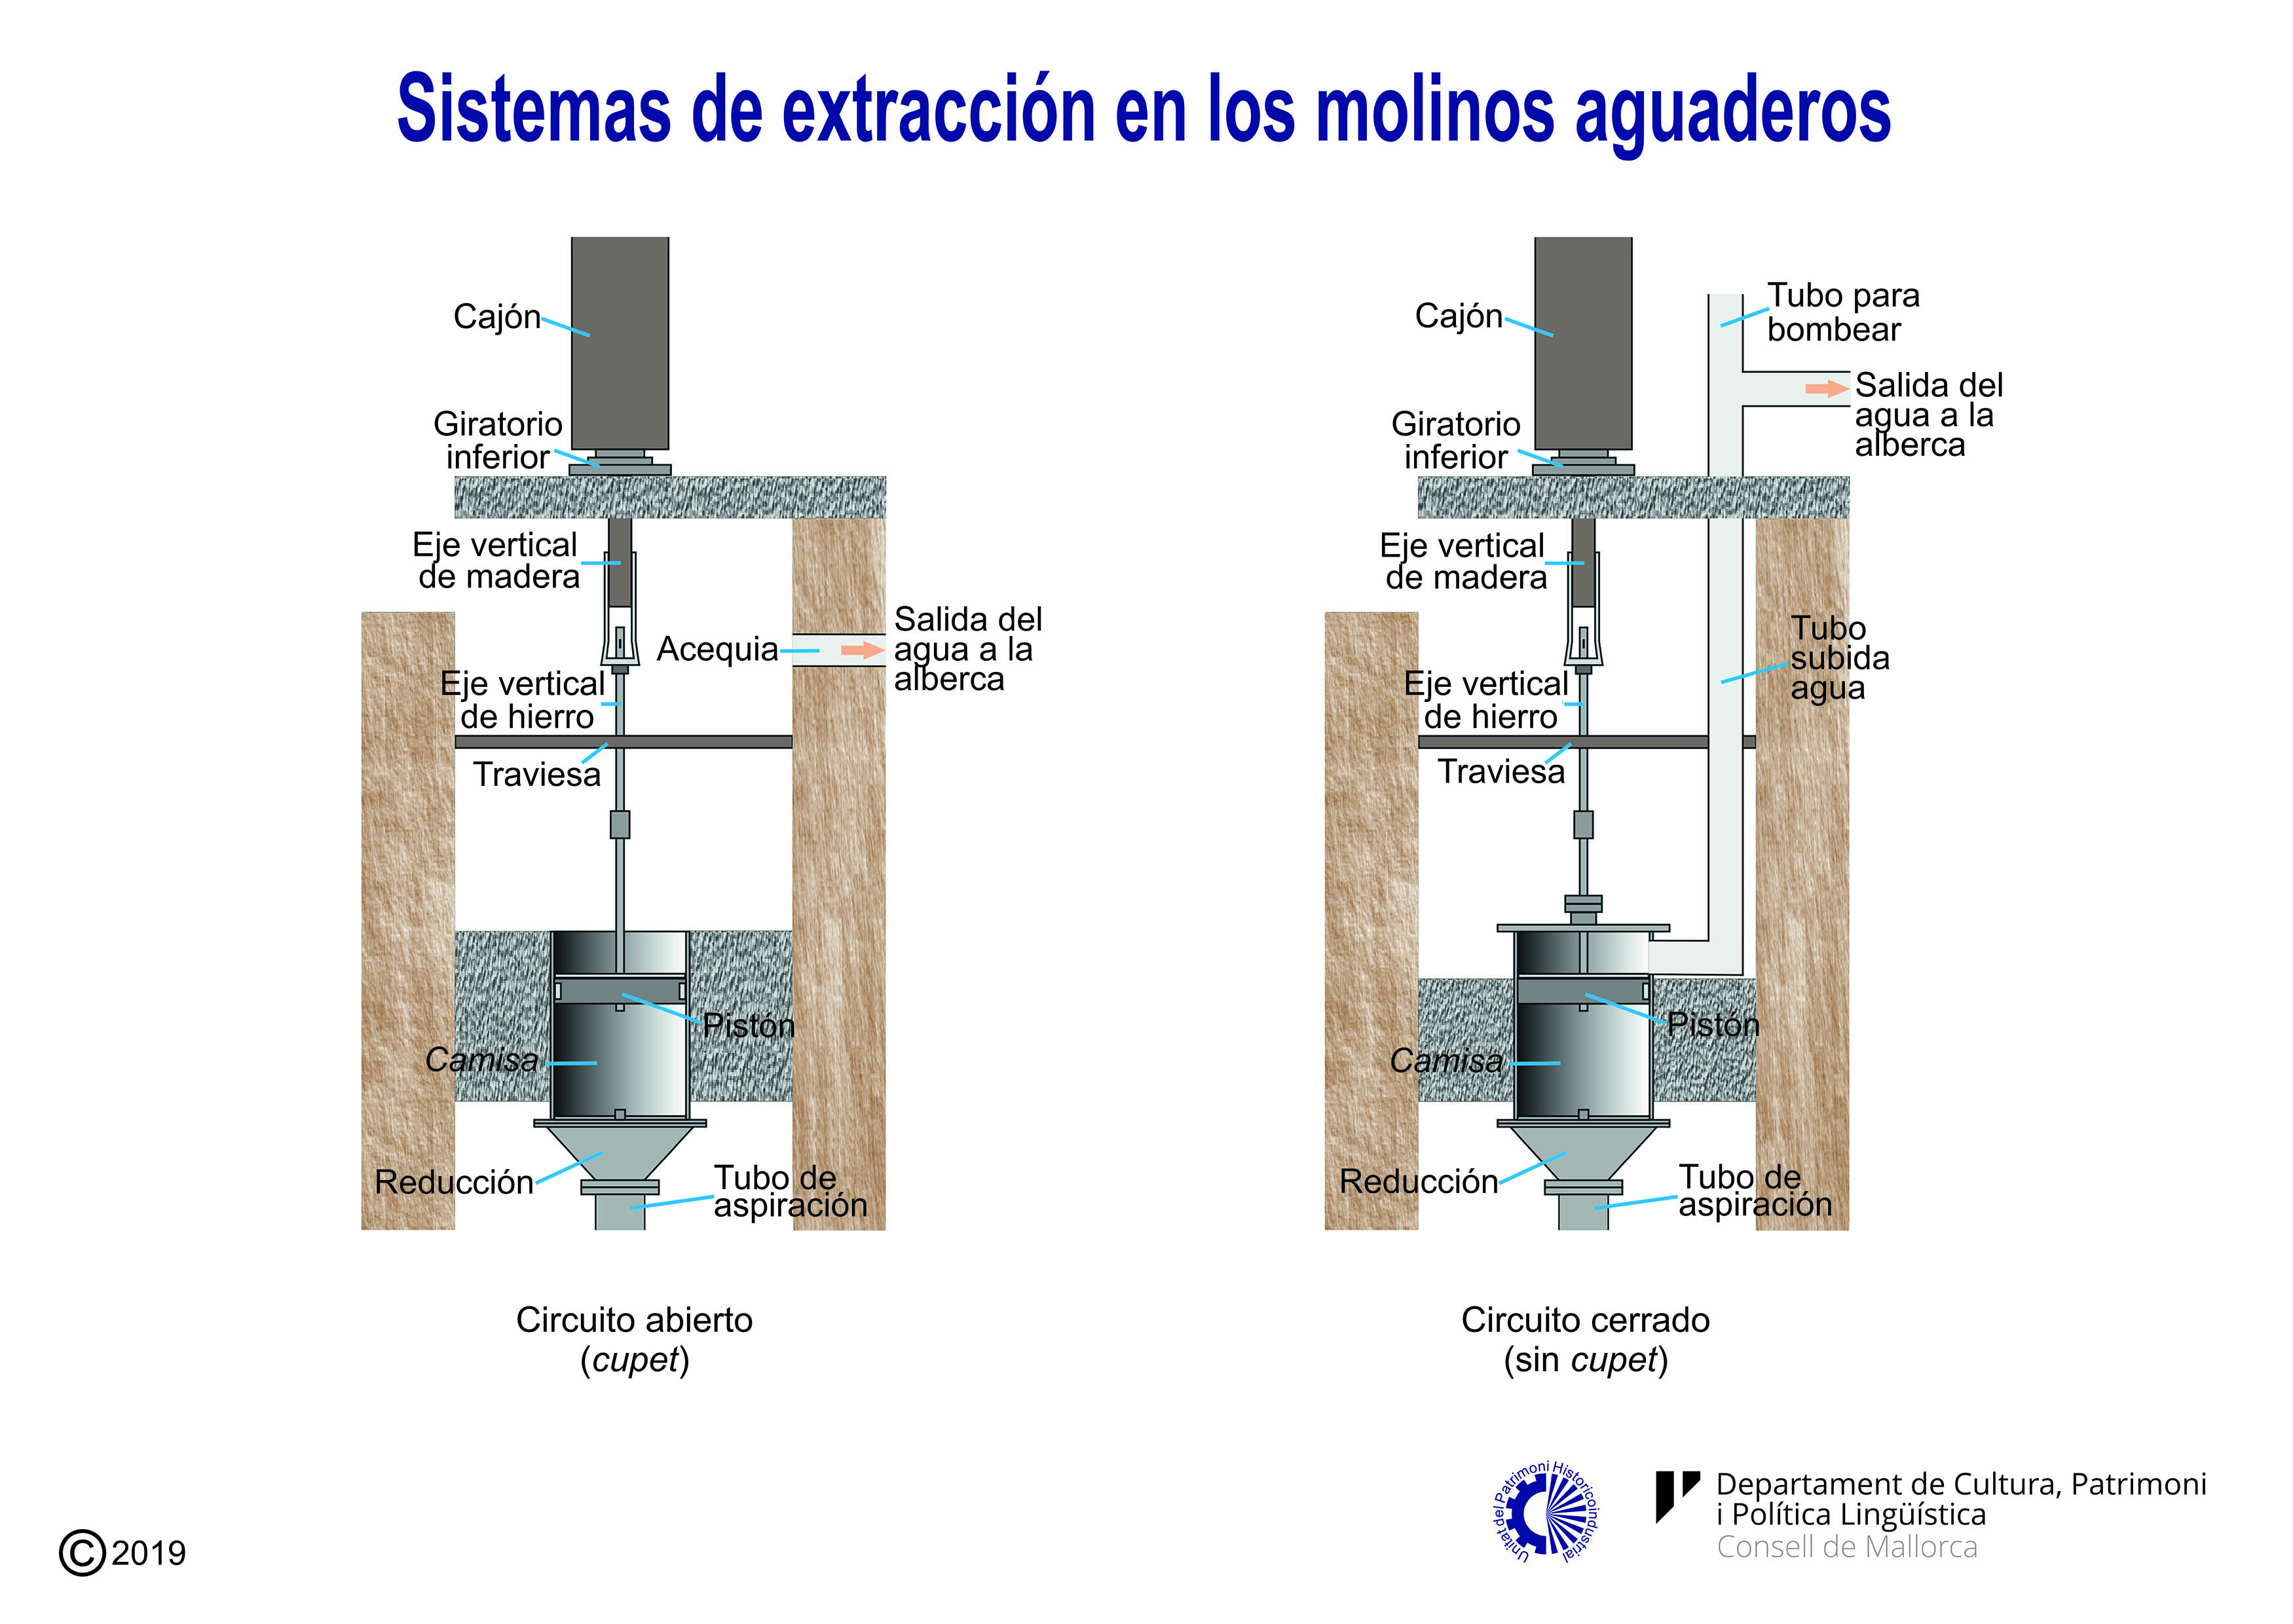 Sistemas de extracción de agua